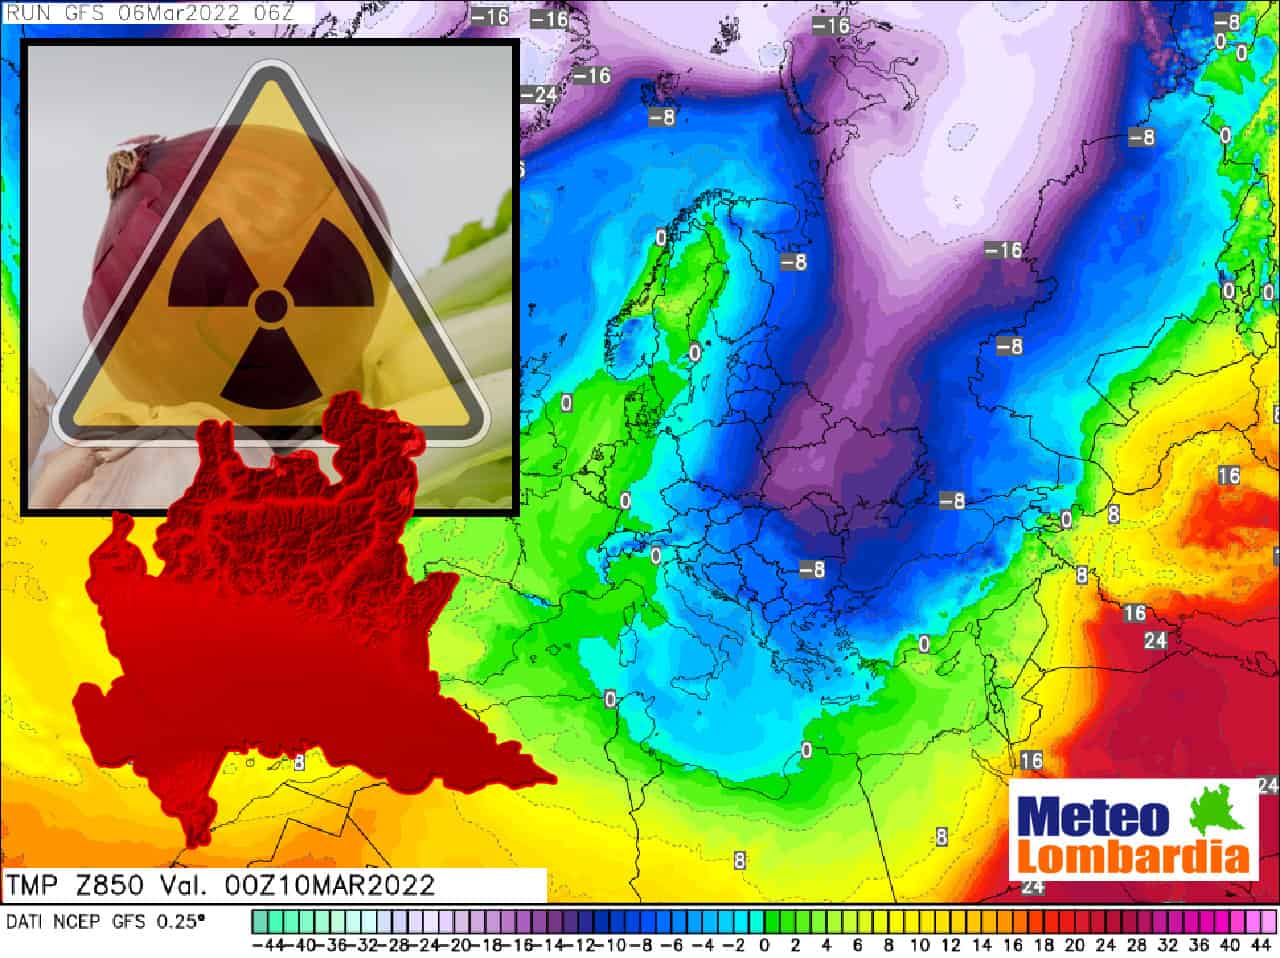 meteo lombardia evoluzione e radiazioni - METEO Lombardia: vento dalla Russia. RADIOATTIVITA’ dell’Ucraina? Come siamo messi